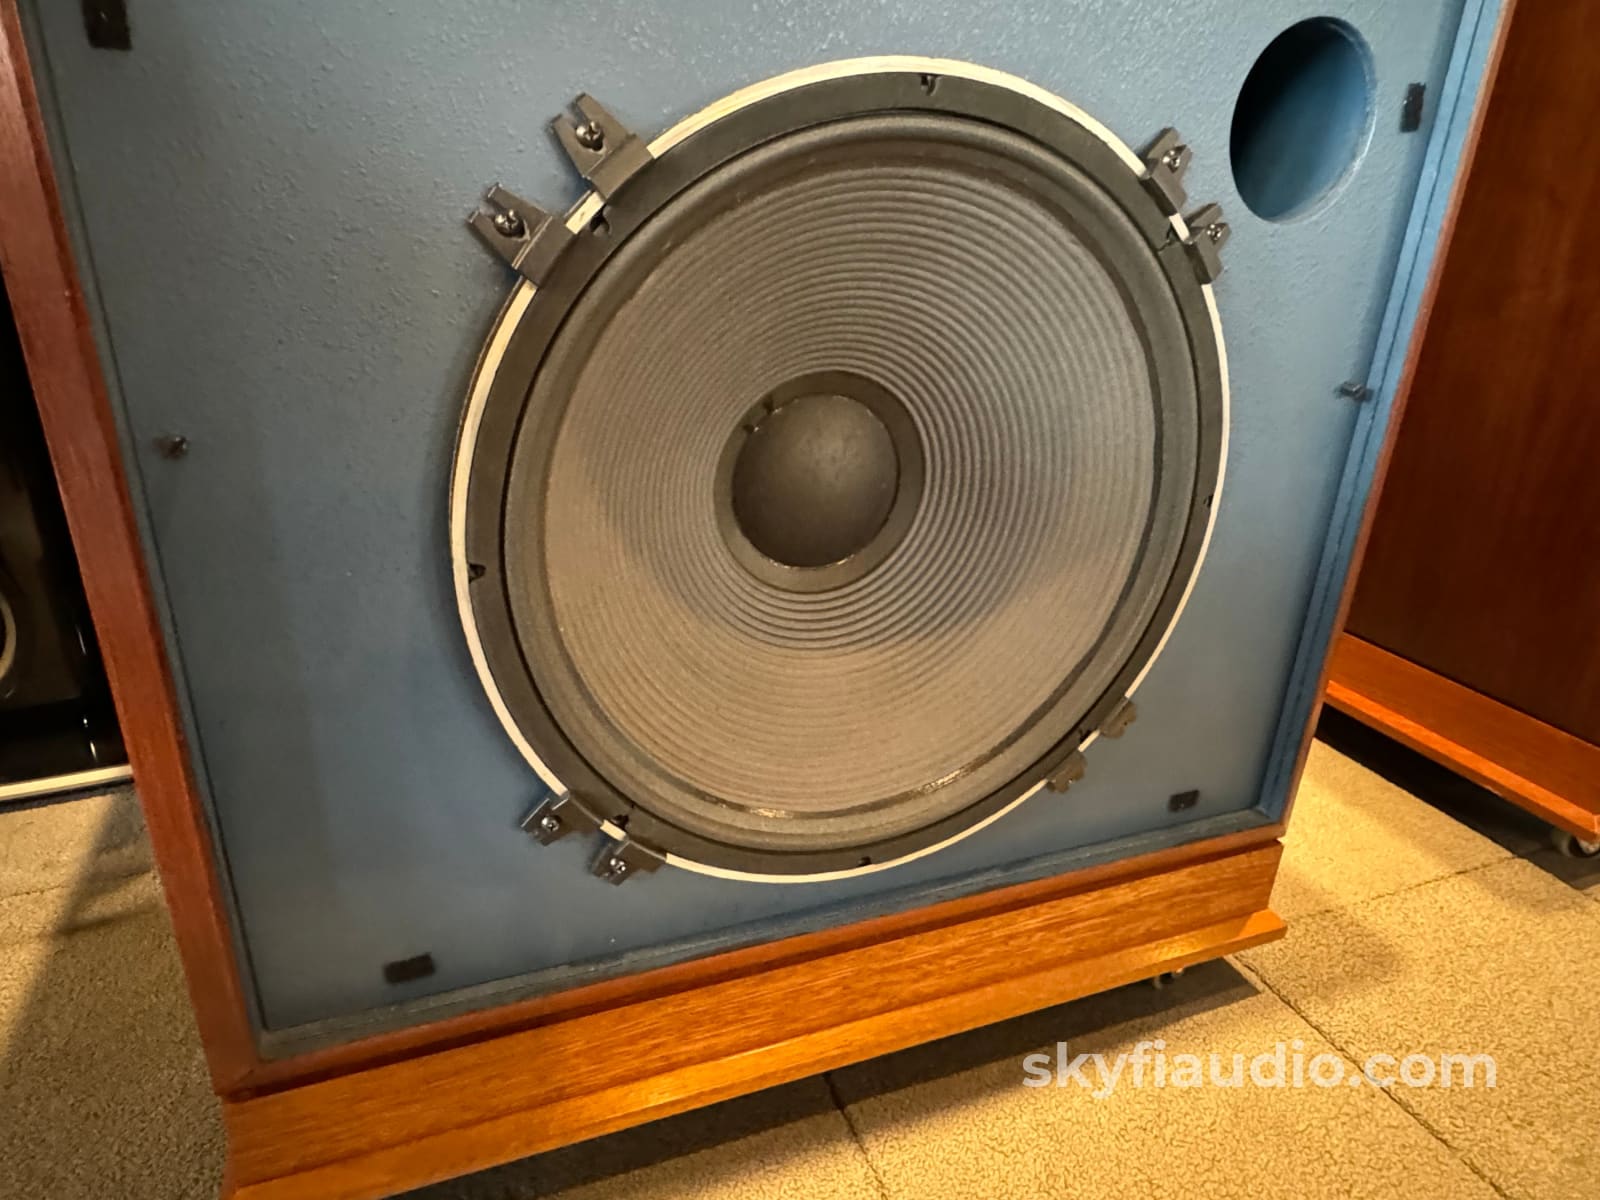 Jbl 4345 Vintage Studio Monitors - Wow! Speakers